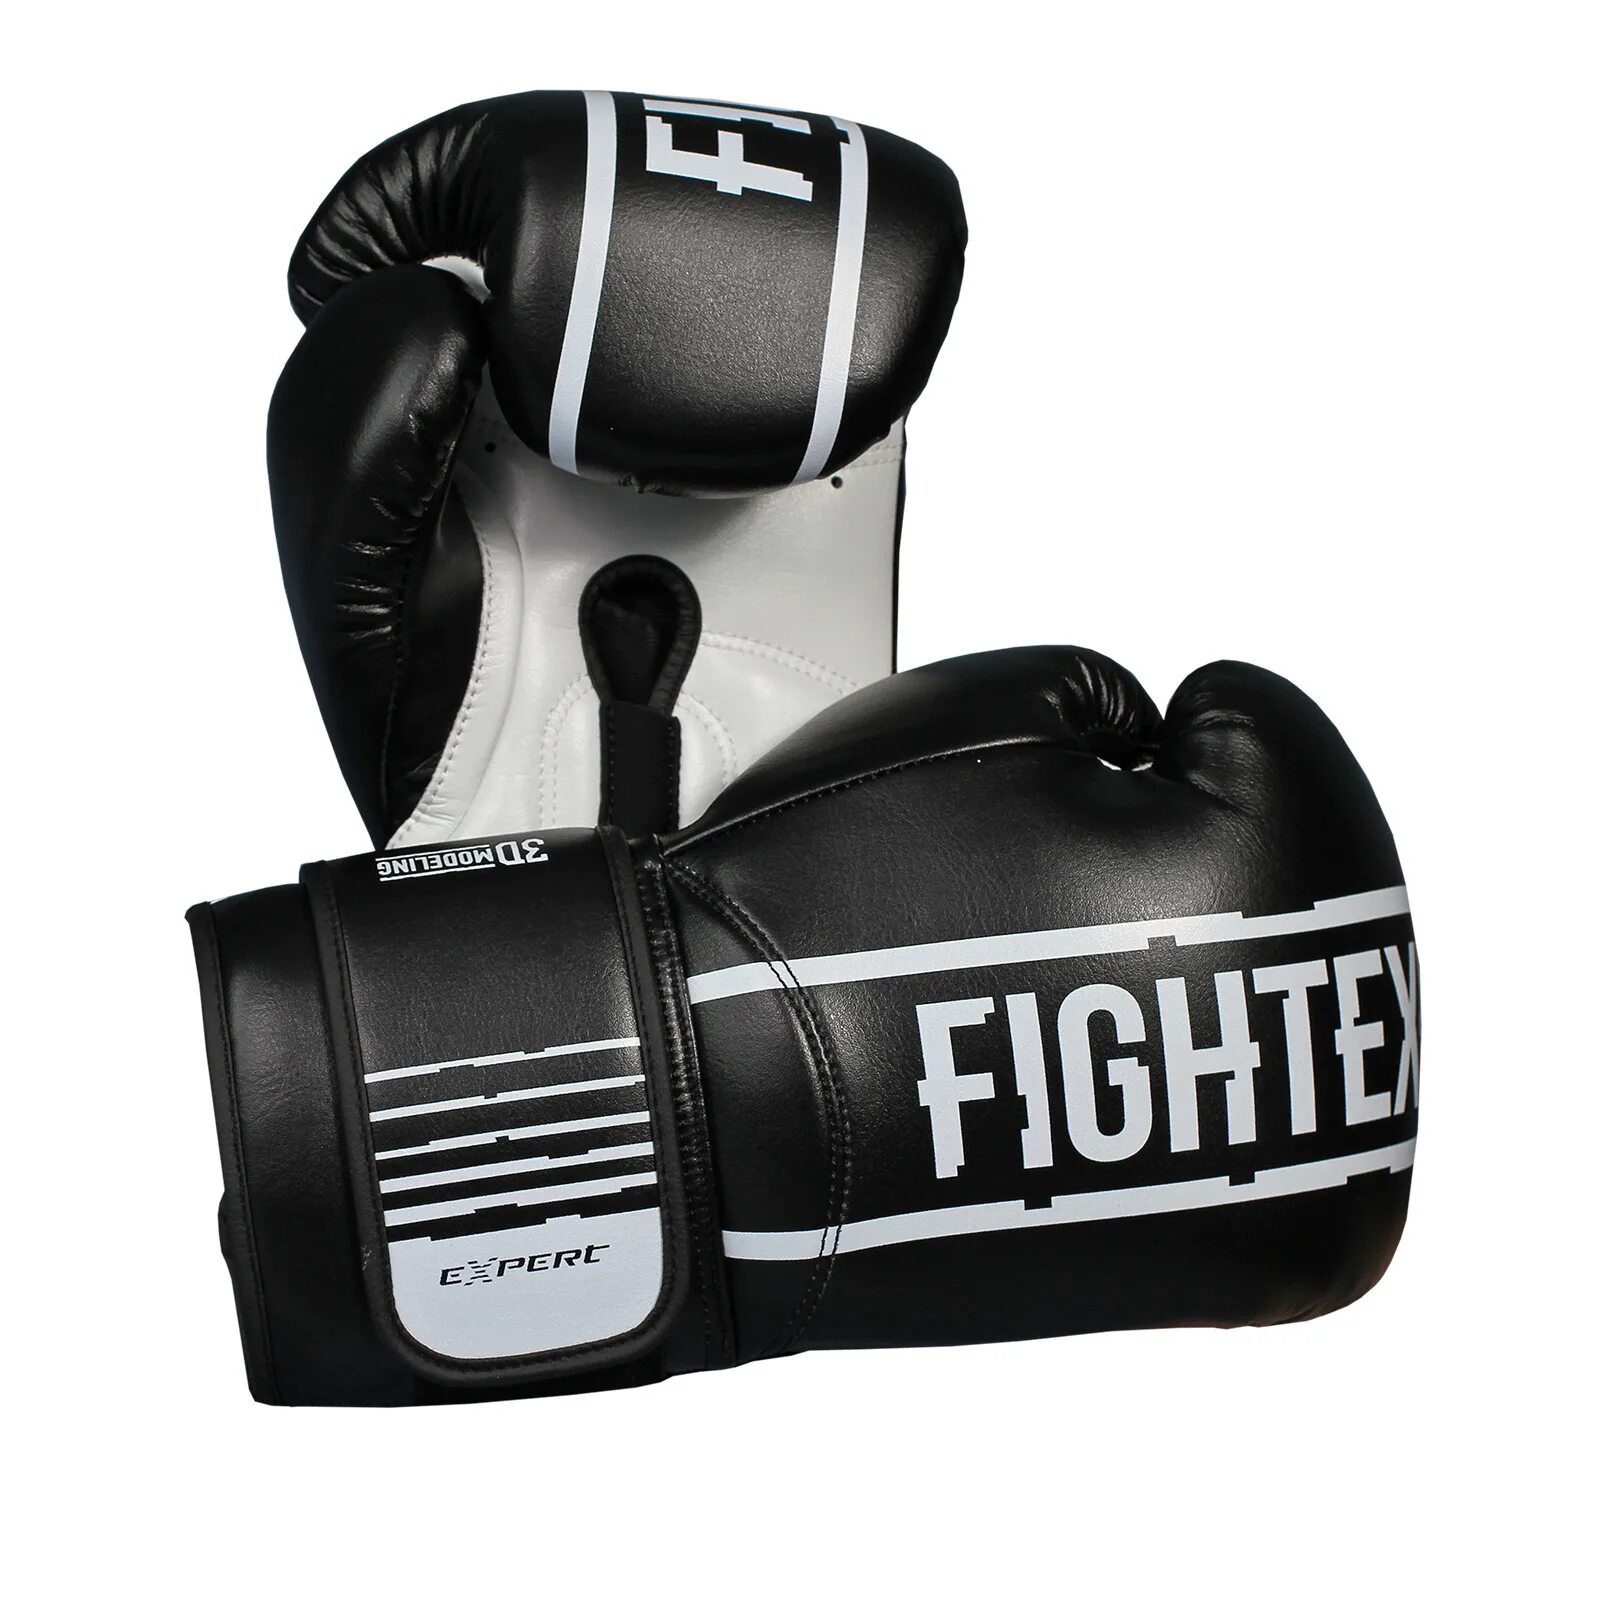 Купить бокс 5. Перчатки для бокса Fight Expert. Перчатки для бокса 14 унций. Перчатки боксерские Fight Expert черные. Перчатки д/бокса Fight Expert BGWL Boxing 5l (кожа FX Leather) р. 14, 16 унц..